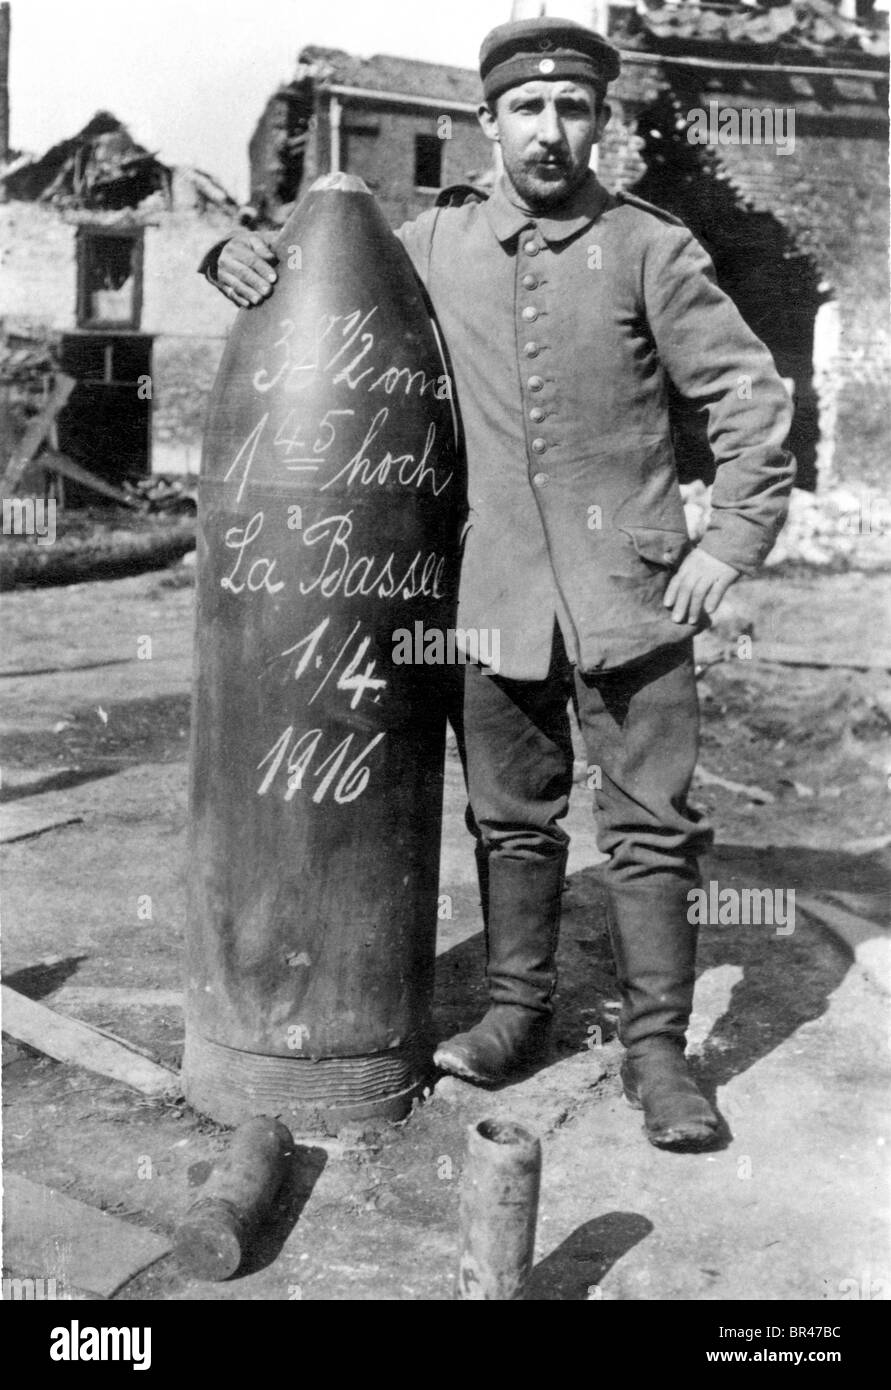 Imagen histórica, soldado de pie junto a una bomba, ca. 1916 Foto de stock